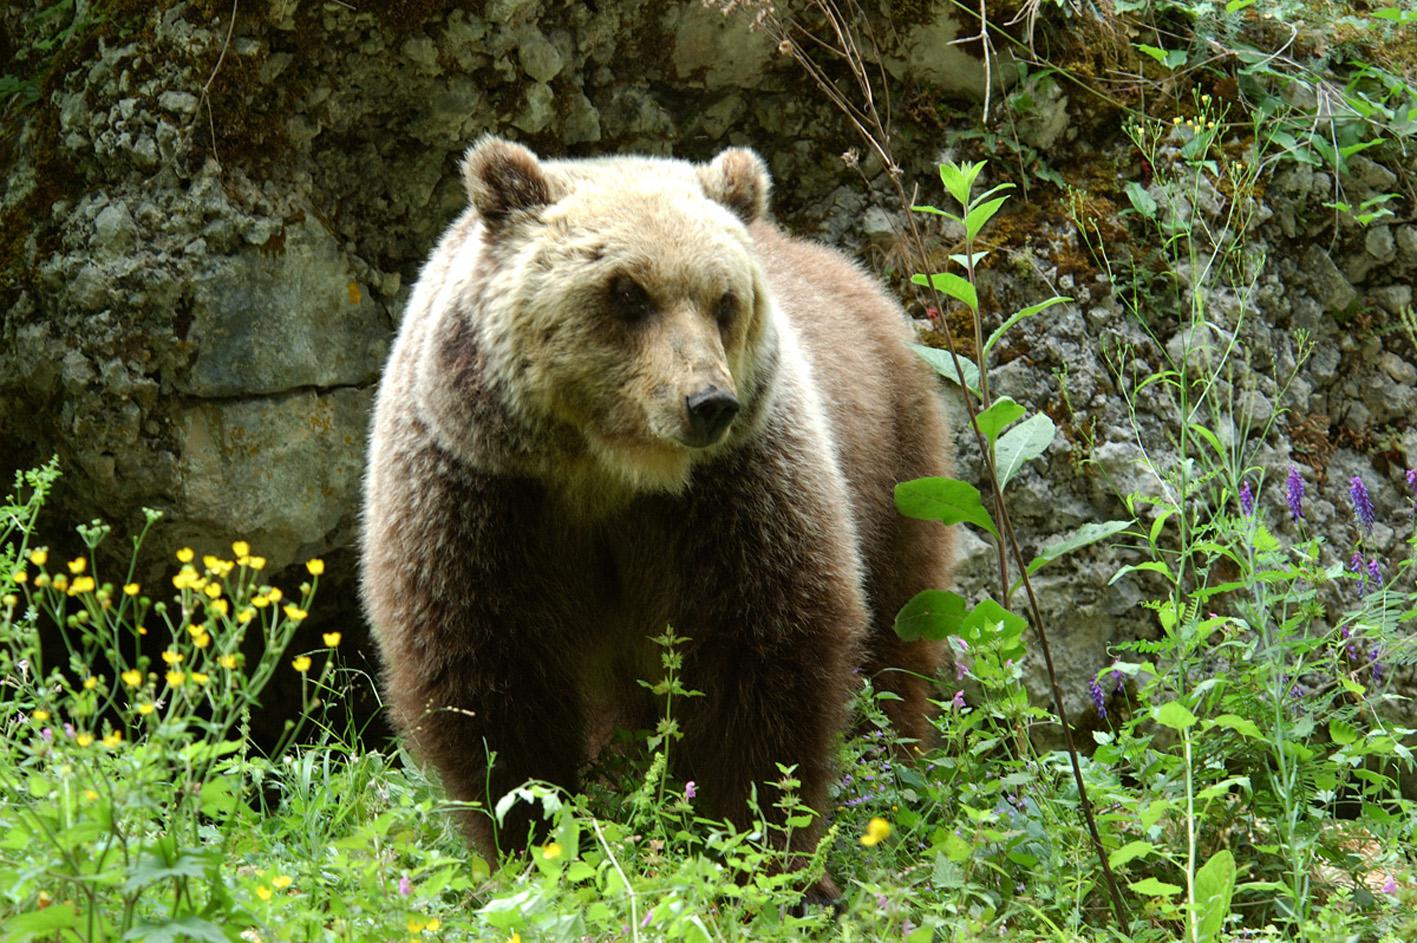 Trento - turista straniero aggredito da un orso a Dro: è ricoverato in ospedale